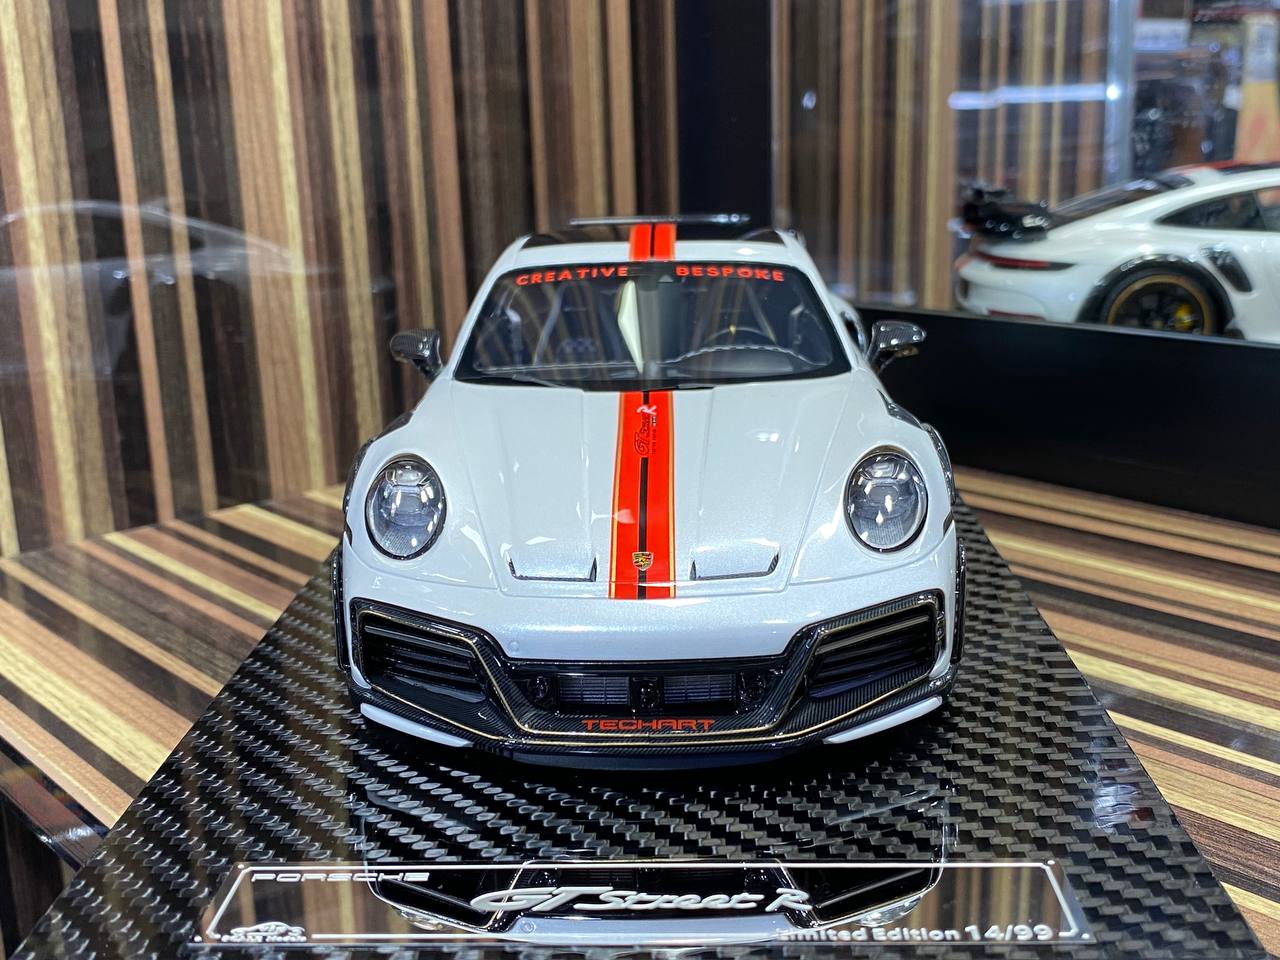 1/18 VIP Models Resin Model - Porsche 992 Turbo S GT Street R TechArt in Elegant Pearl White|Sold in Dturman.com Dubai UAE.